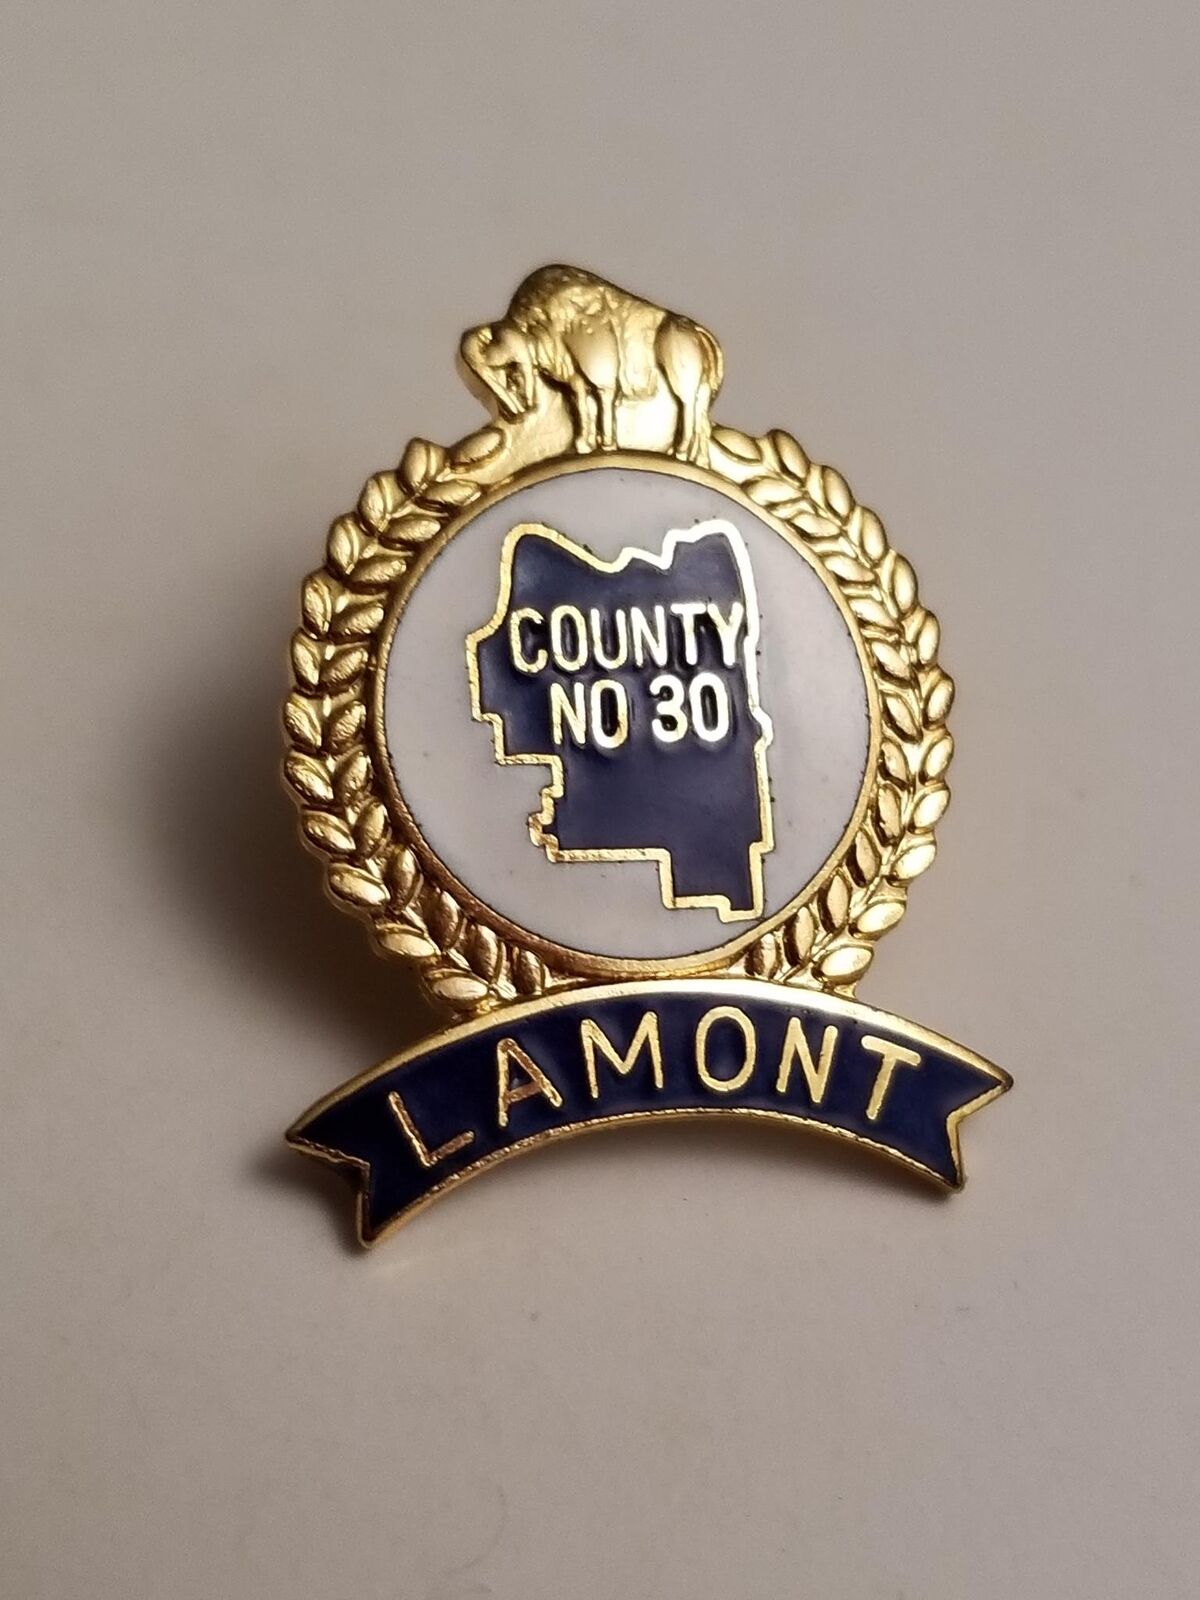 Lamont County No 30 Alberta Buffalo Lapel Pin 2272